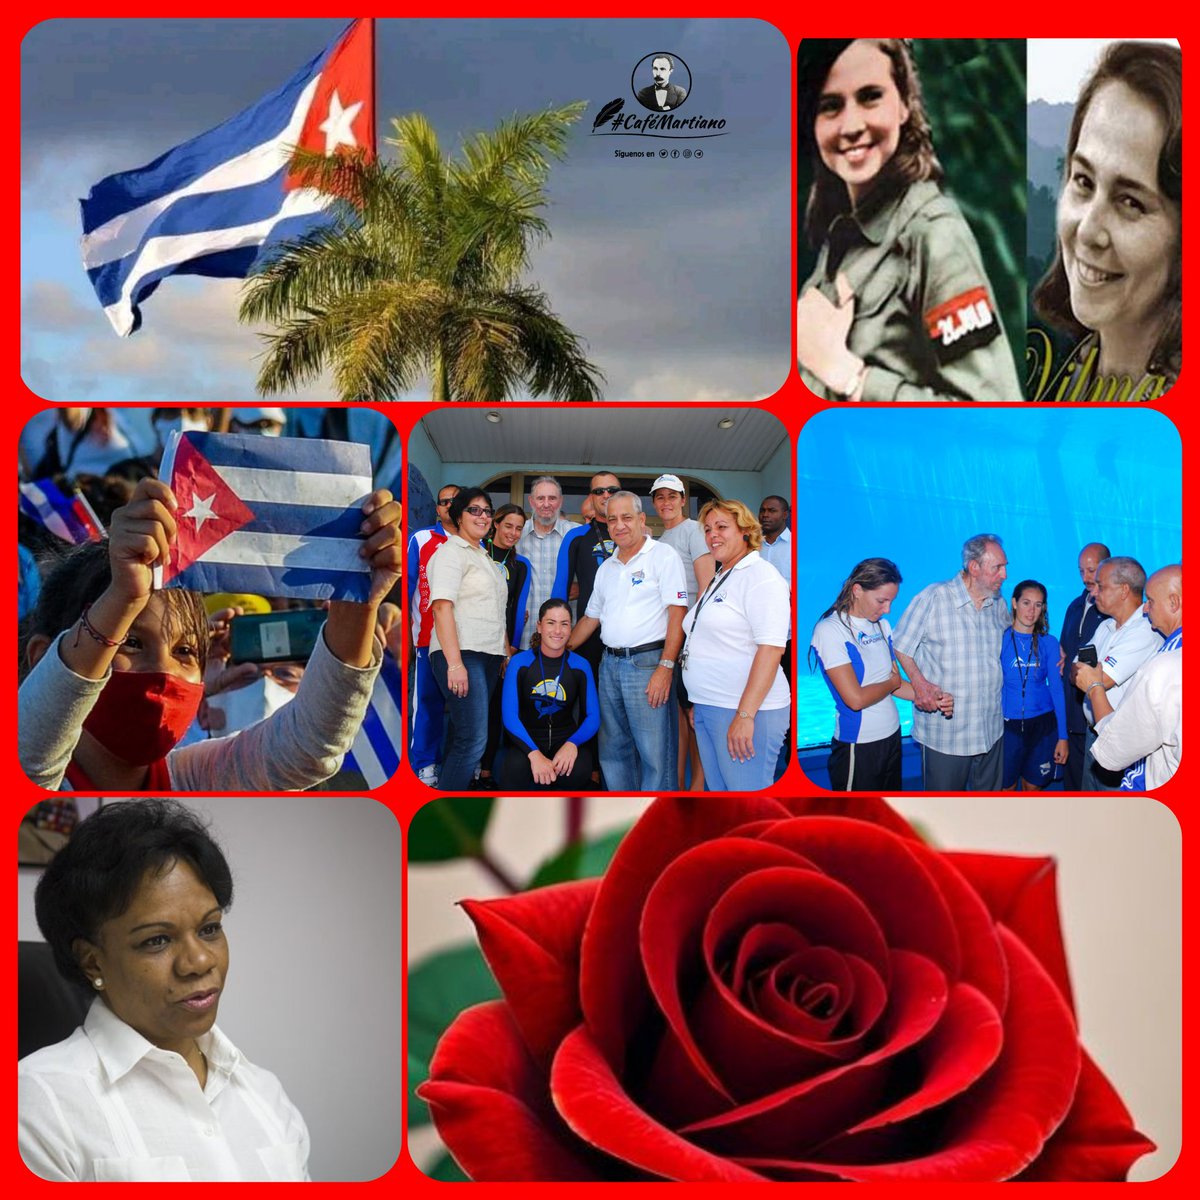 @cafemartiano @DiazCanelB @DrRobertoMOjeda @InesMChapman @TeresaBoue @EVilluendasC @IzquierdaUnid15 @agnes_becerra @mimovilespatria @DeZurdaTeam_ @ValoresTeam1 Buenos días 🇨🇺 #CaféMartiano Con la grandeza de las #MujeresEnRevolución ✍️Toda la Patria está en la mujer Fidel: La mujer es el taller natural donde se forja la vida. CubaEsAmor 💕